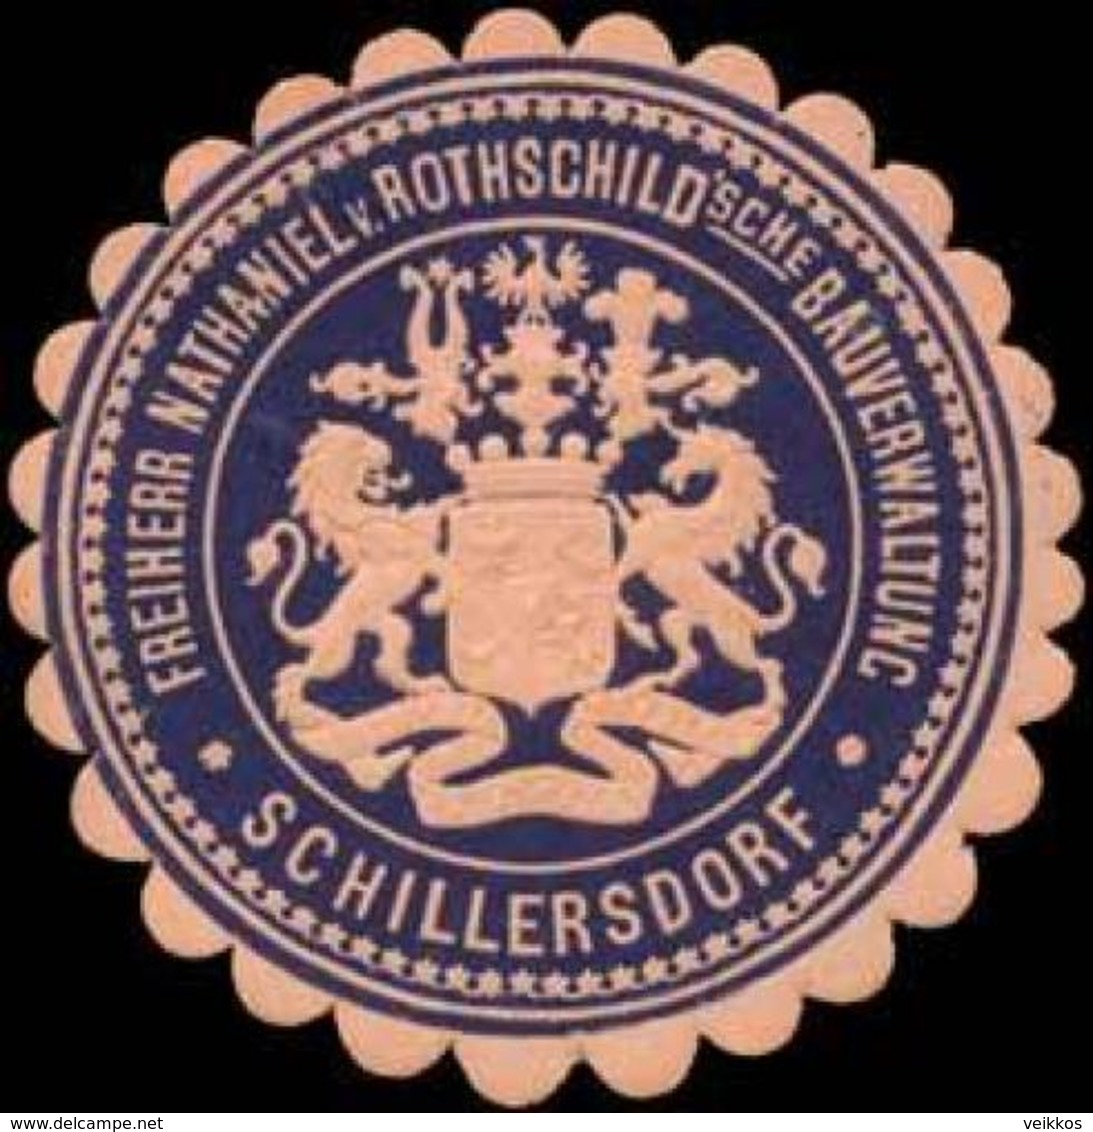 Schillersdorf: Freiherr Nathaniel Von Rothschildsche Bauverwaltung Schillersdorf Siegelmarke - Cinderellas